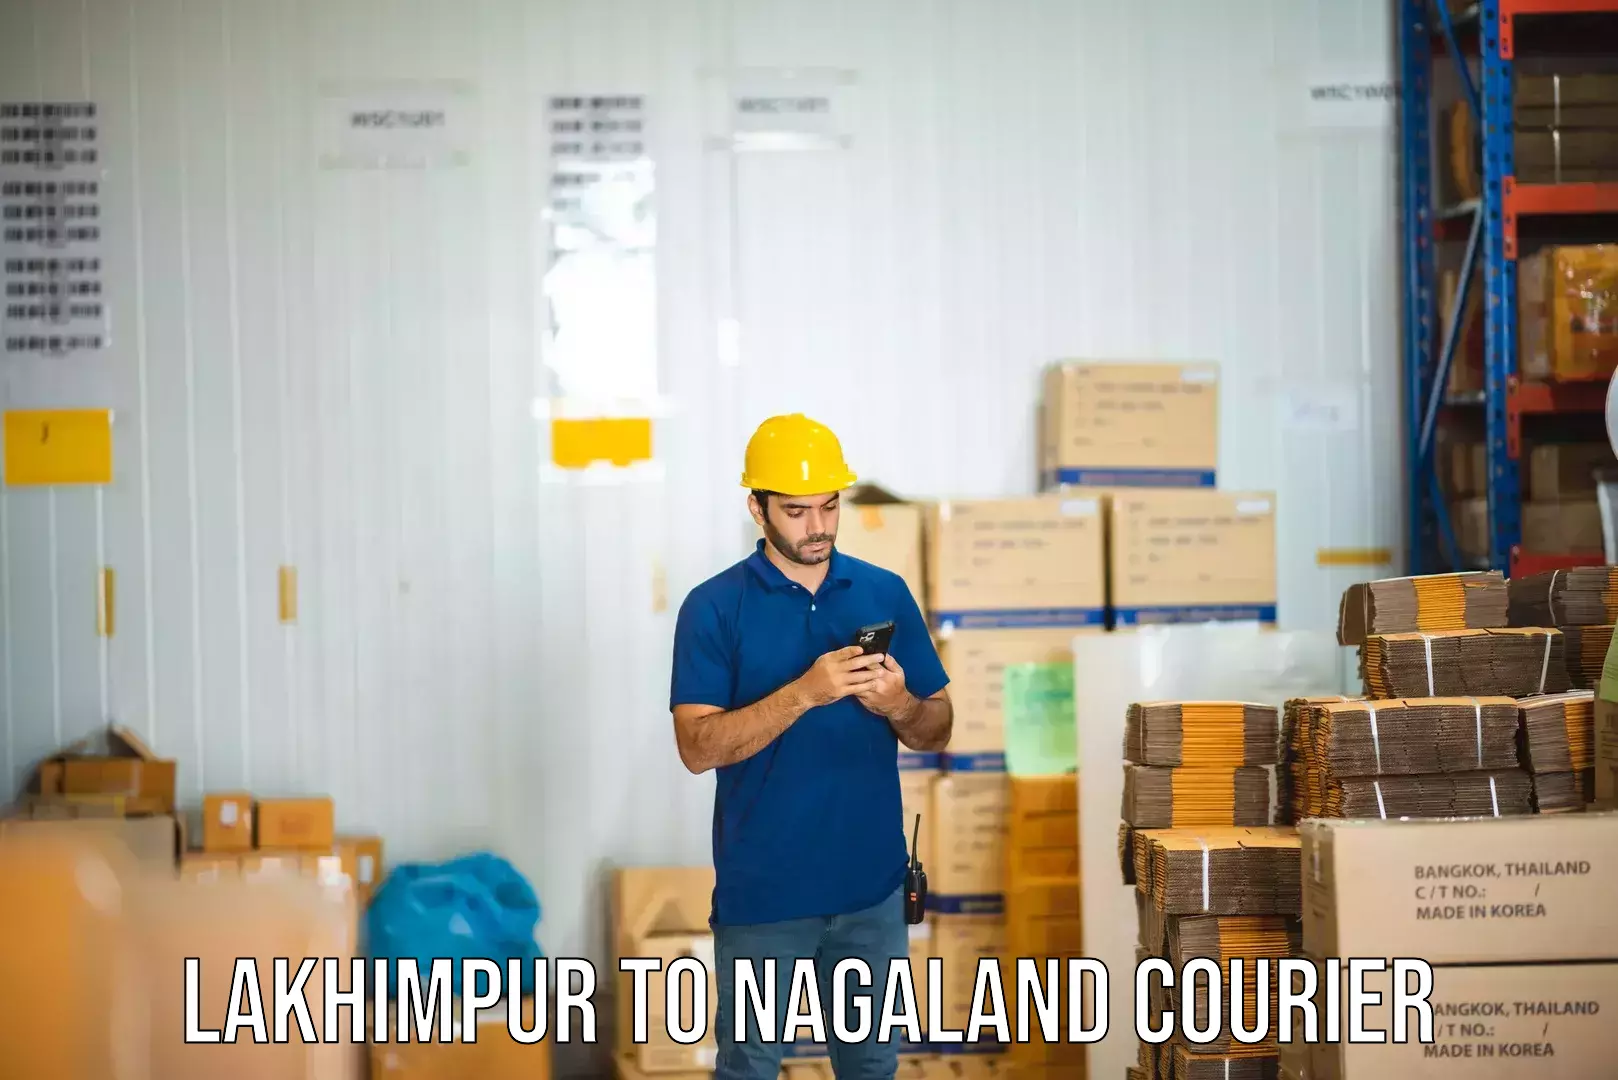 User-friendly courier app Lakhimpur to Dimapur